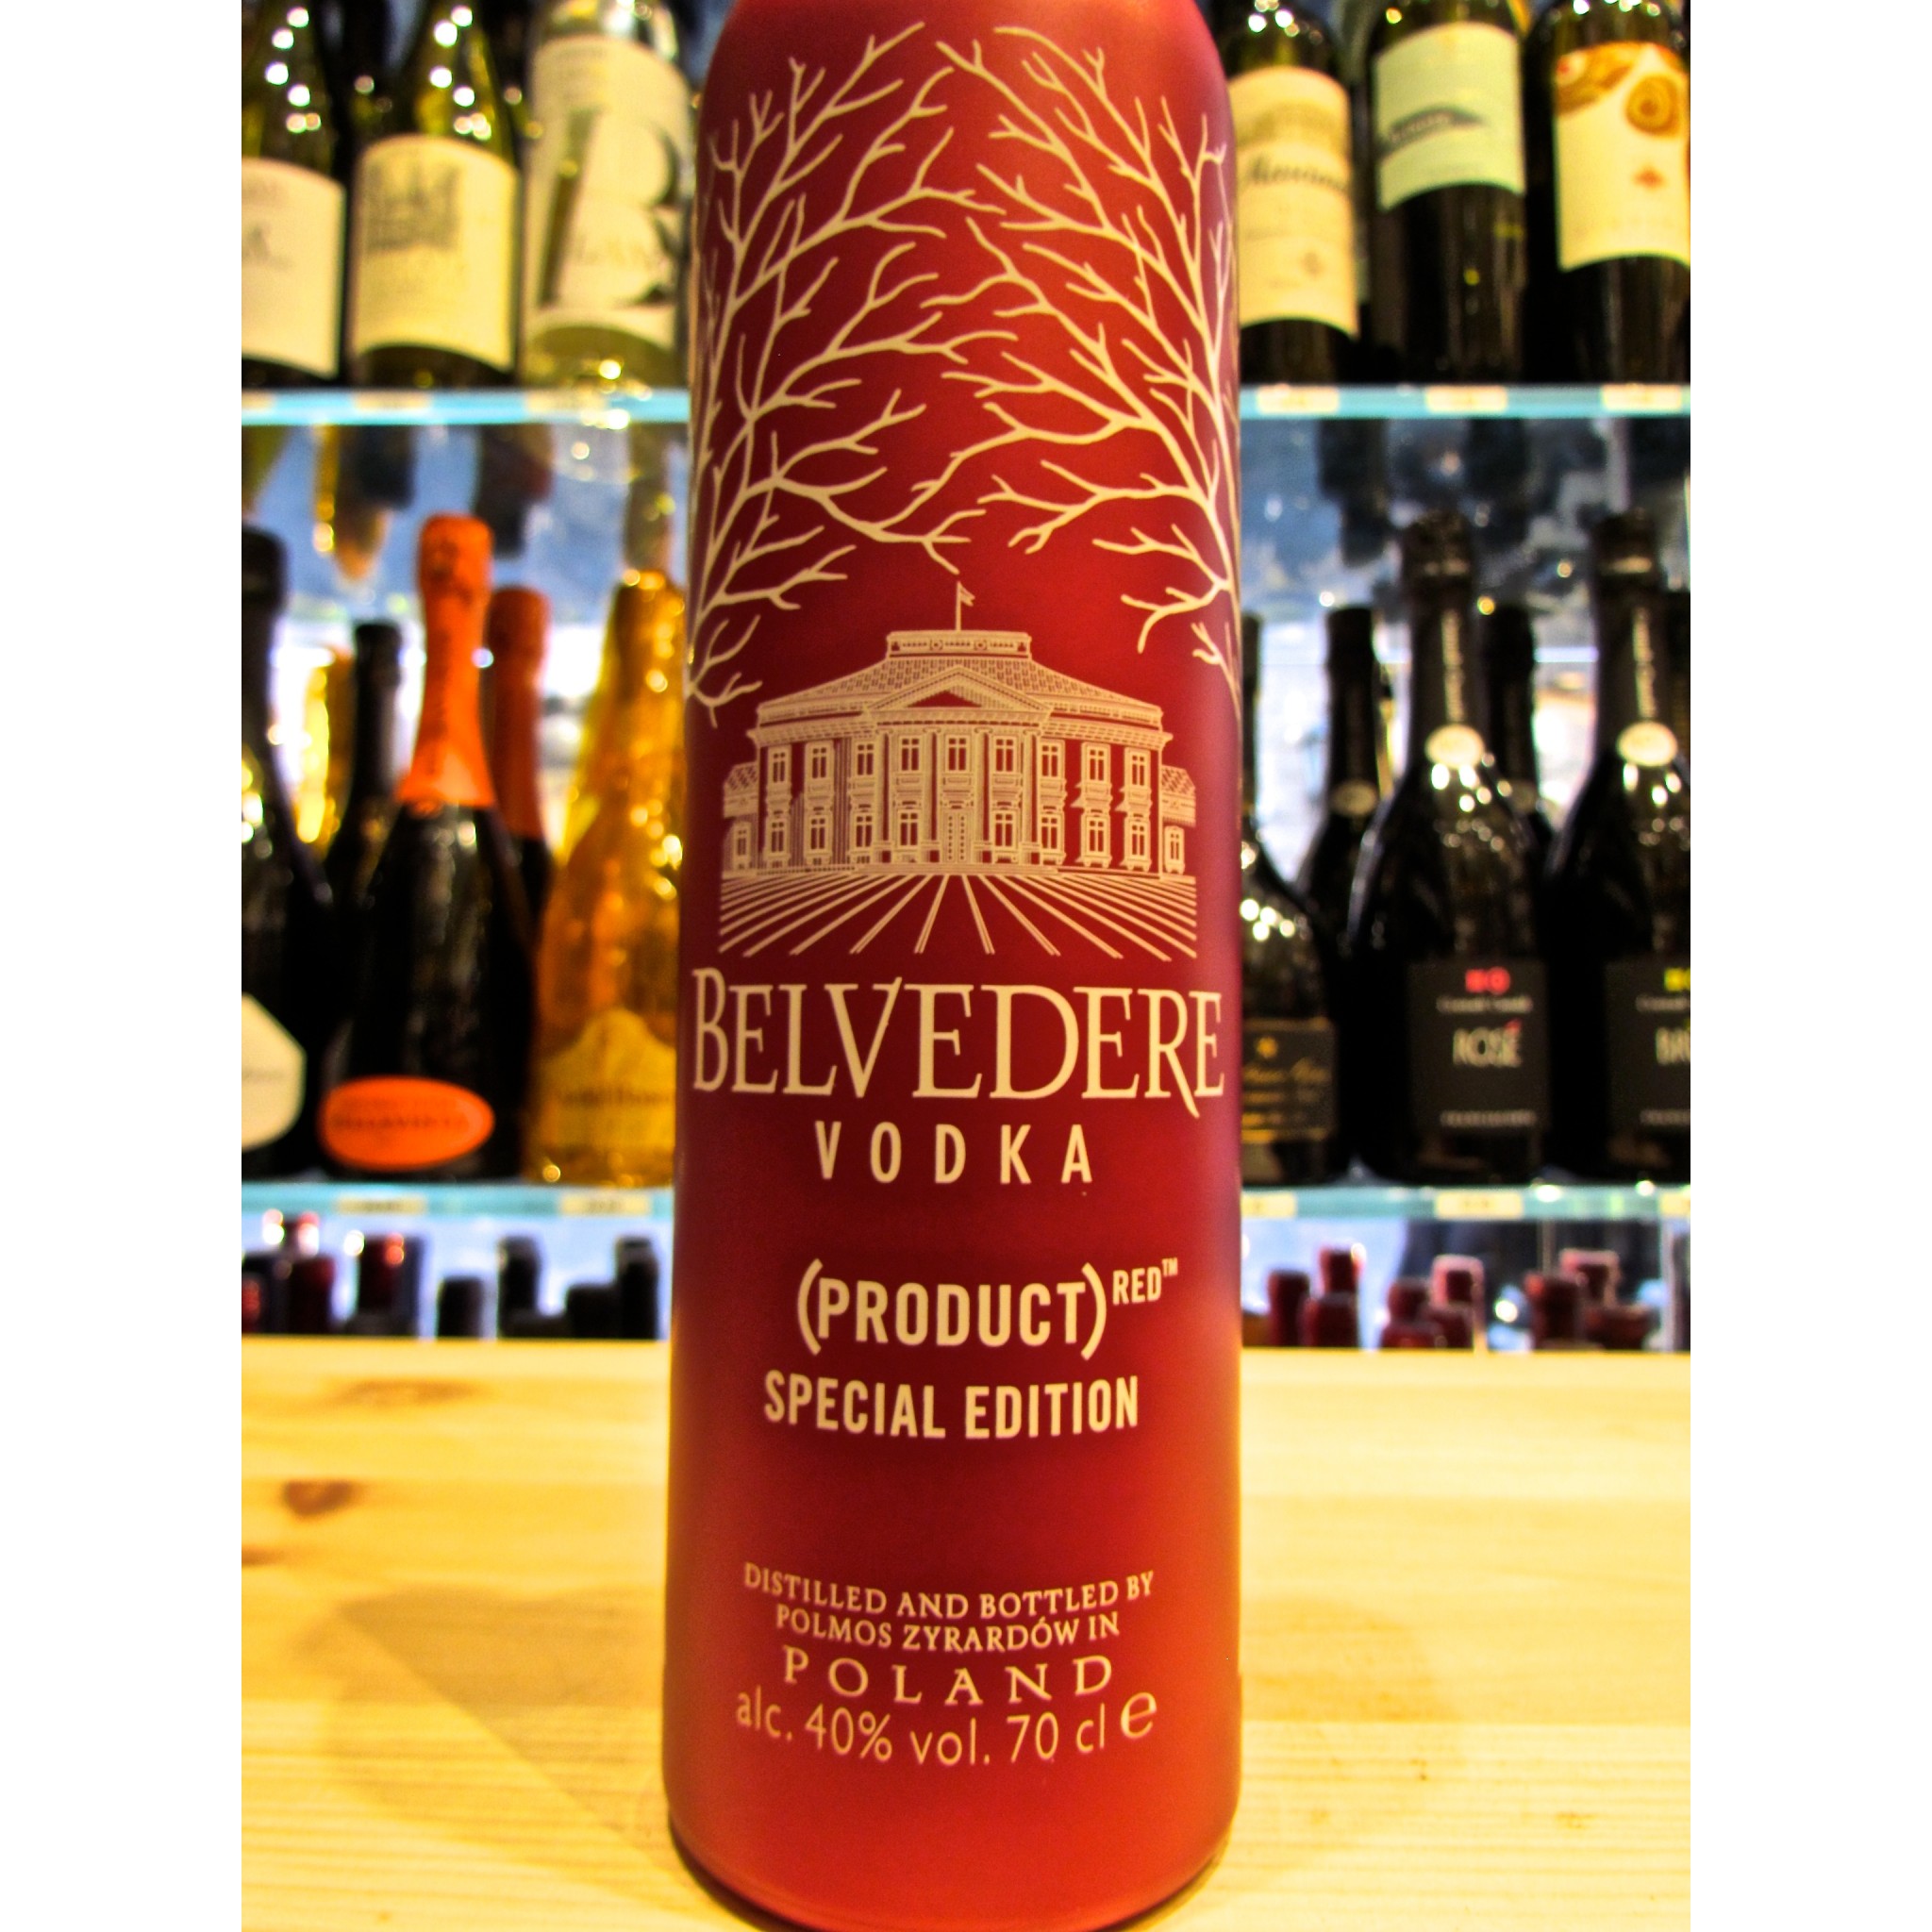 Belvedere (Red) Special Edition Vodka – mPower Test